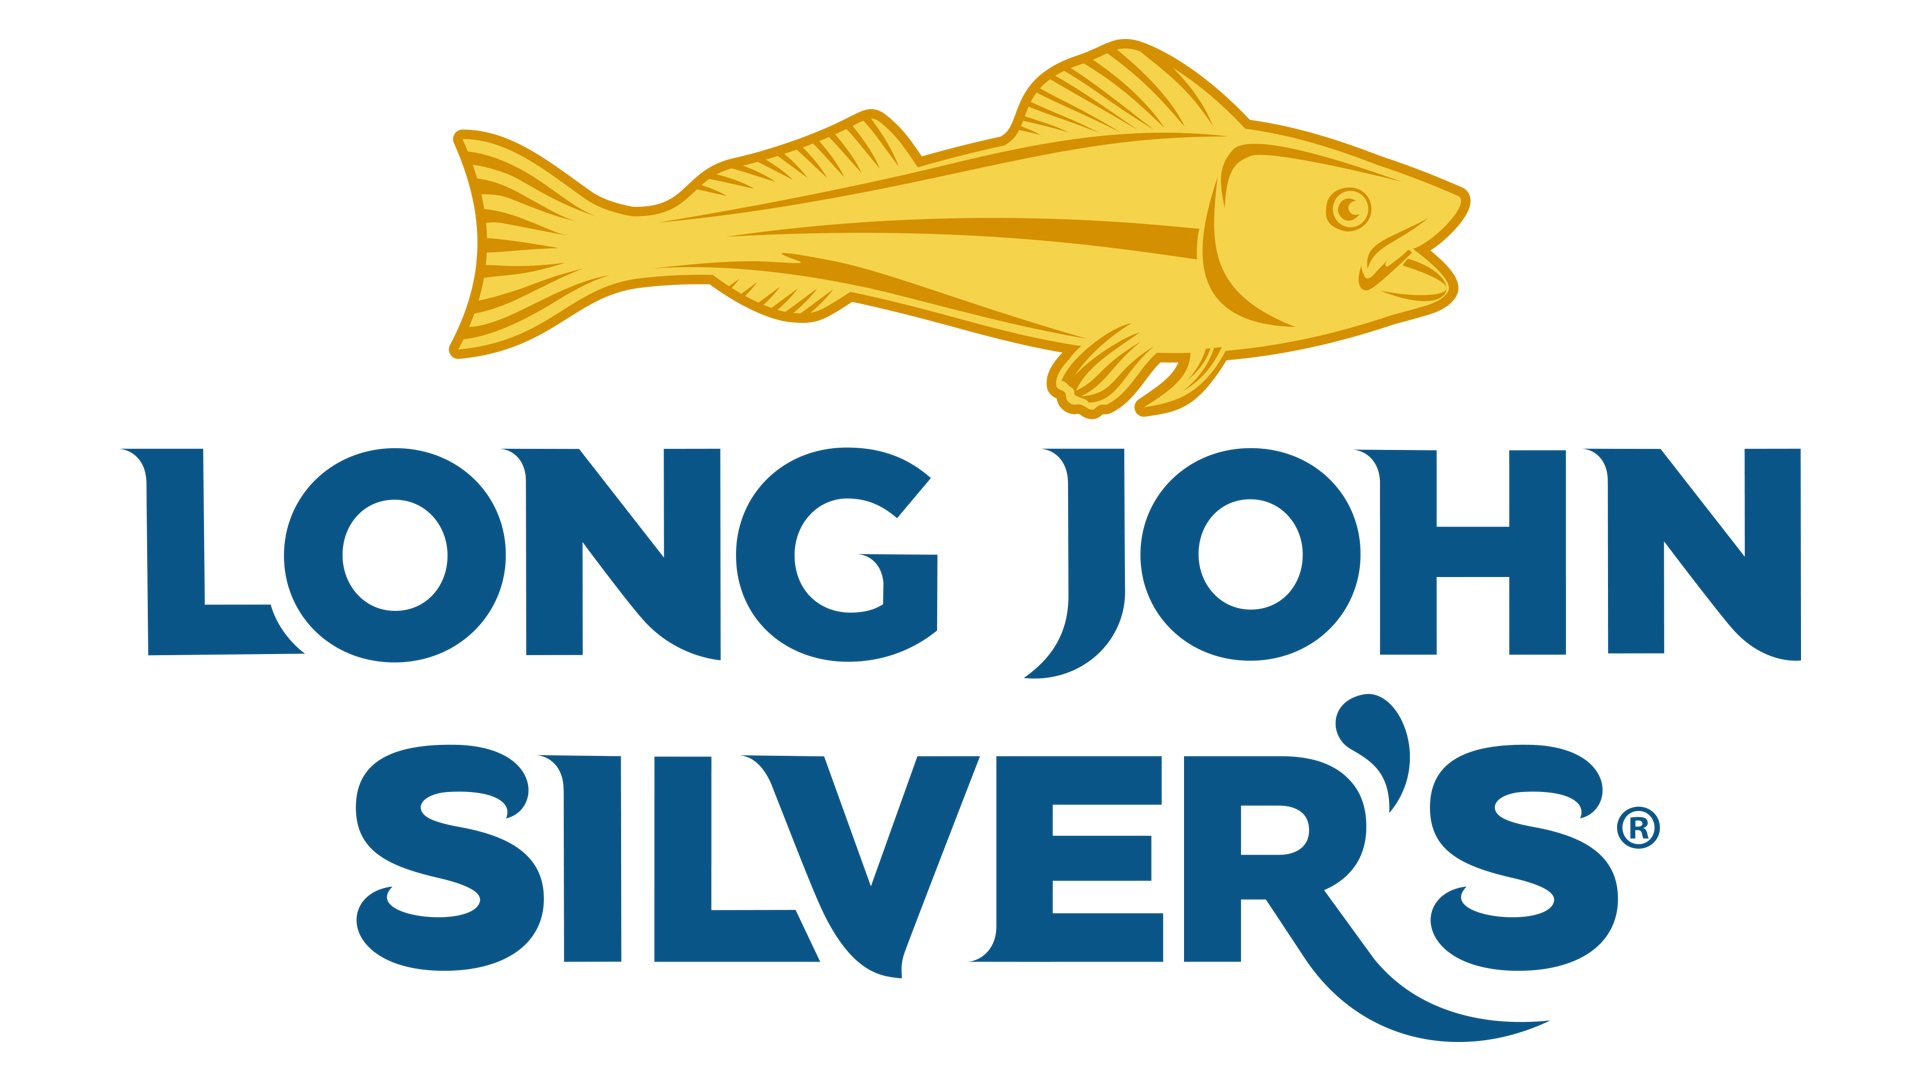 Long John Silver’s menu